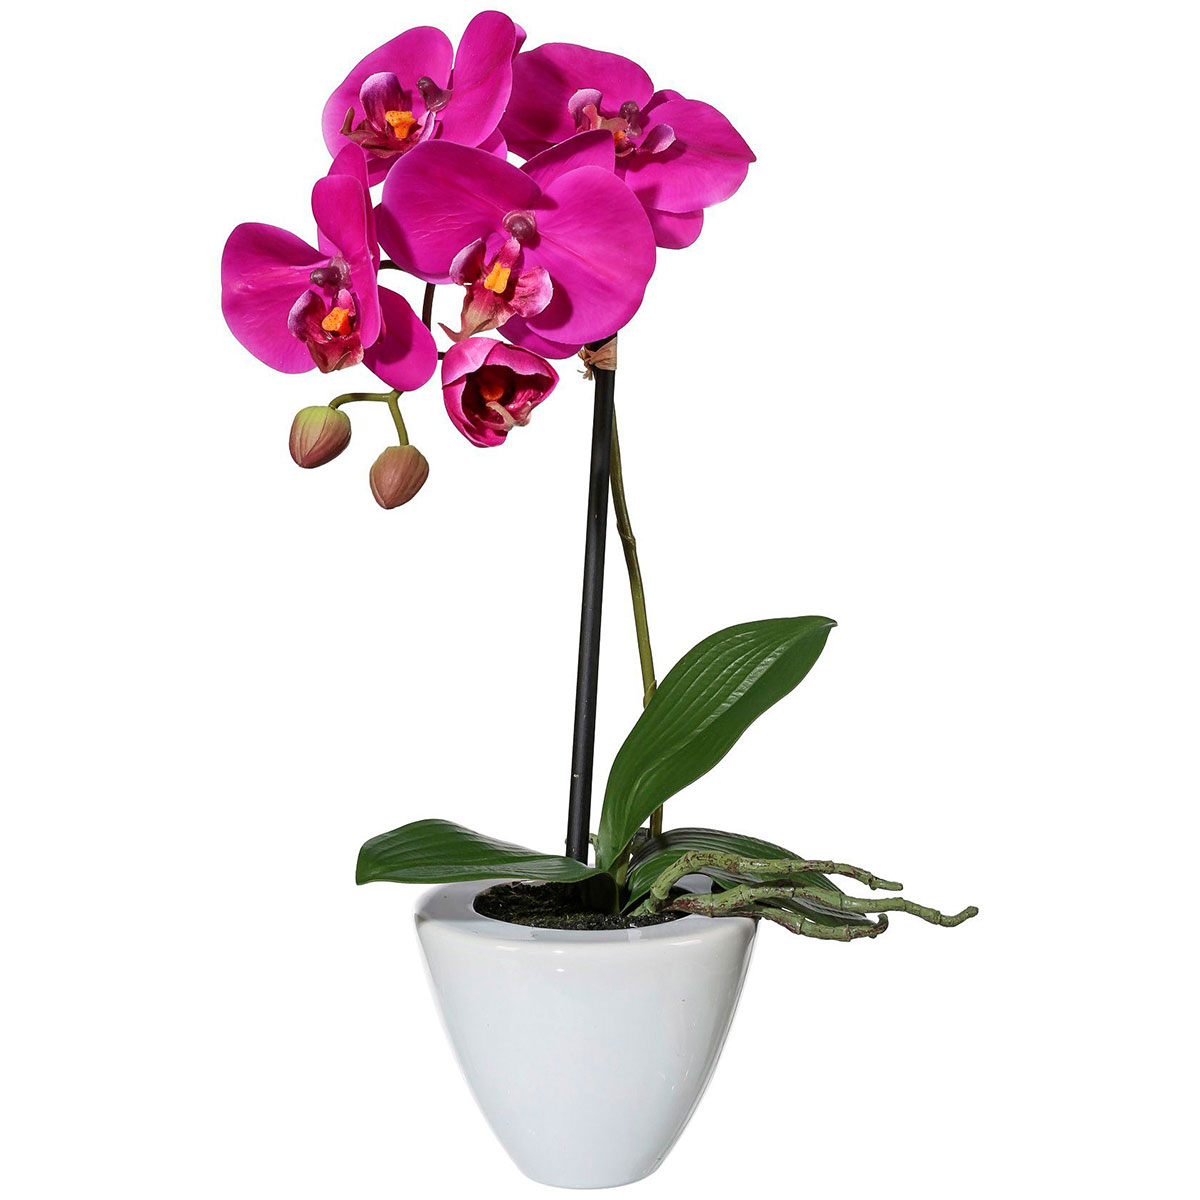 Купить цветы орхидеи в горшке. Орхидея фаленопсис в горшке. Цветок в горшке фаленопсис. Фаленопсис 3215. Фаленопсис Вандер микс твой дом.